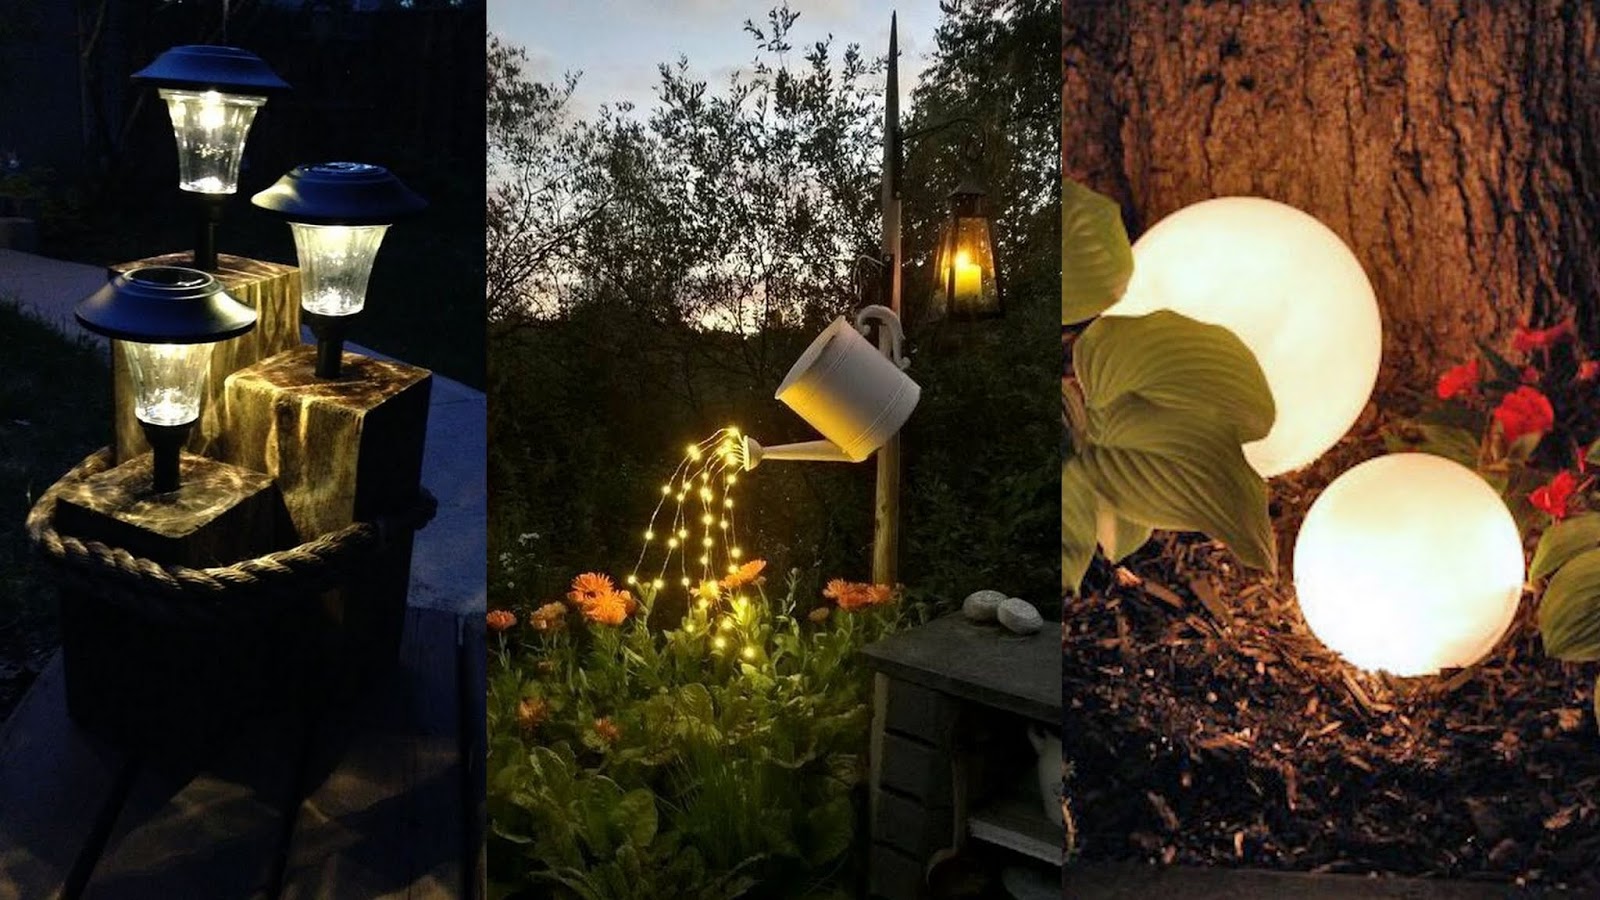 DIY Κατασκευές με απλά Ηλιακά Φωτιστικά για τον κήπο ή το μπαλκόνι - Φωτογραφία 2